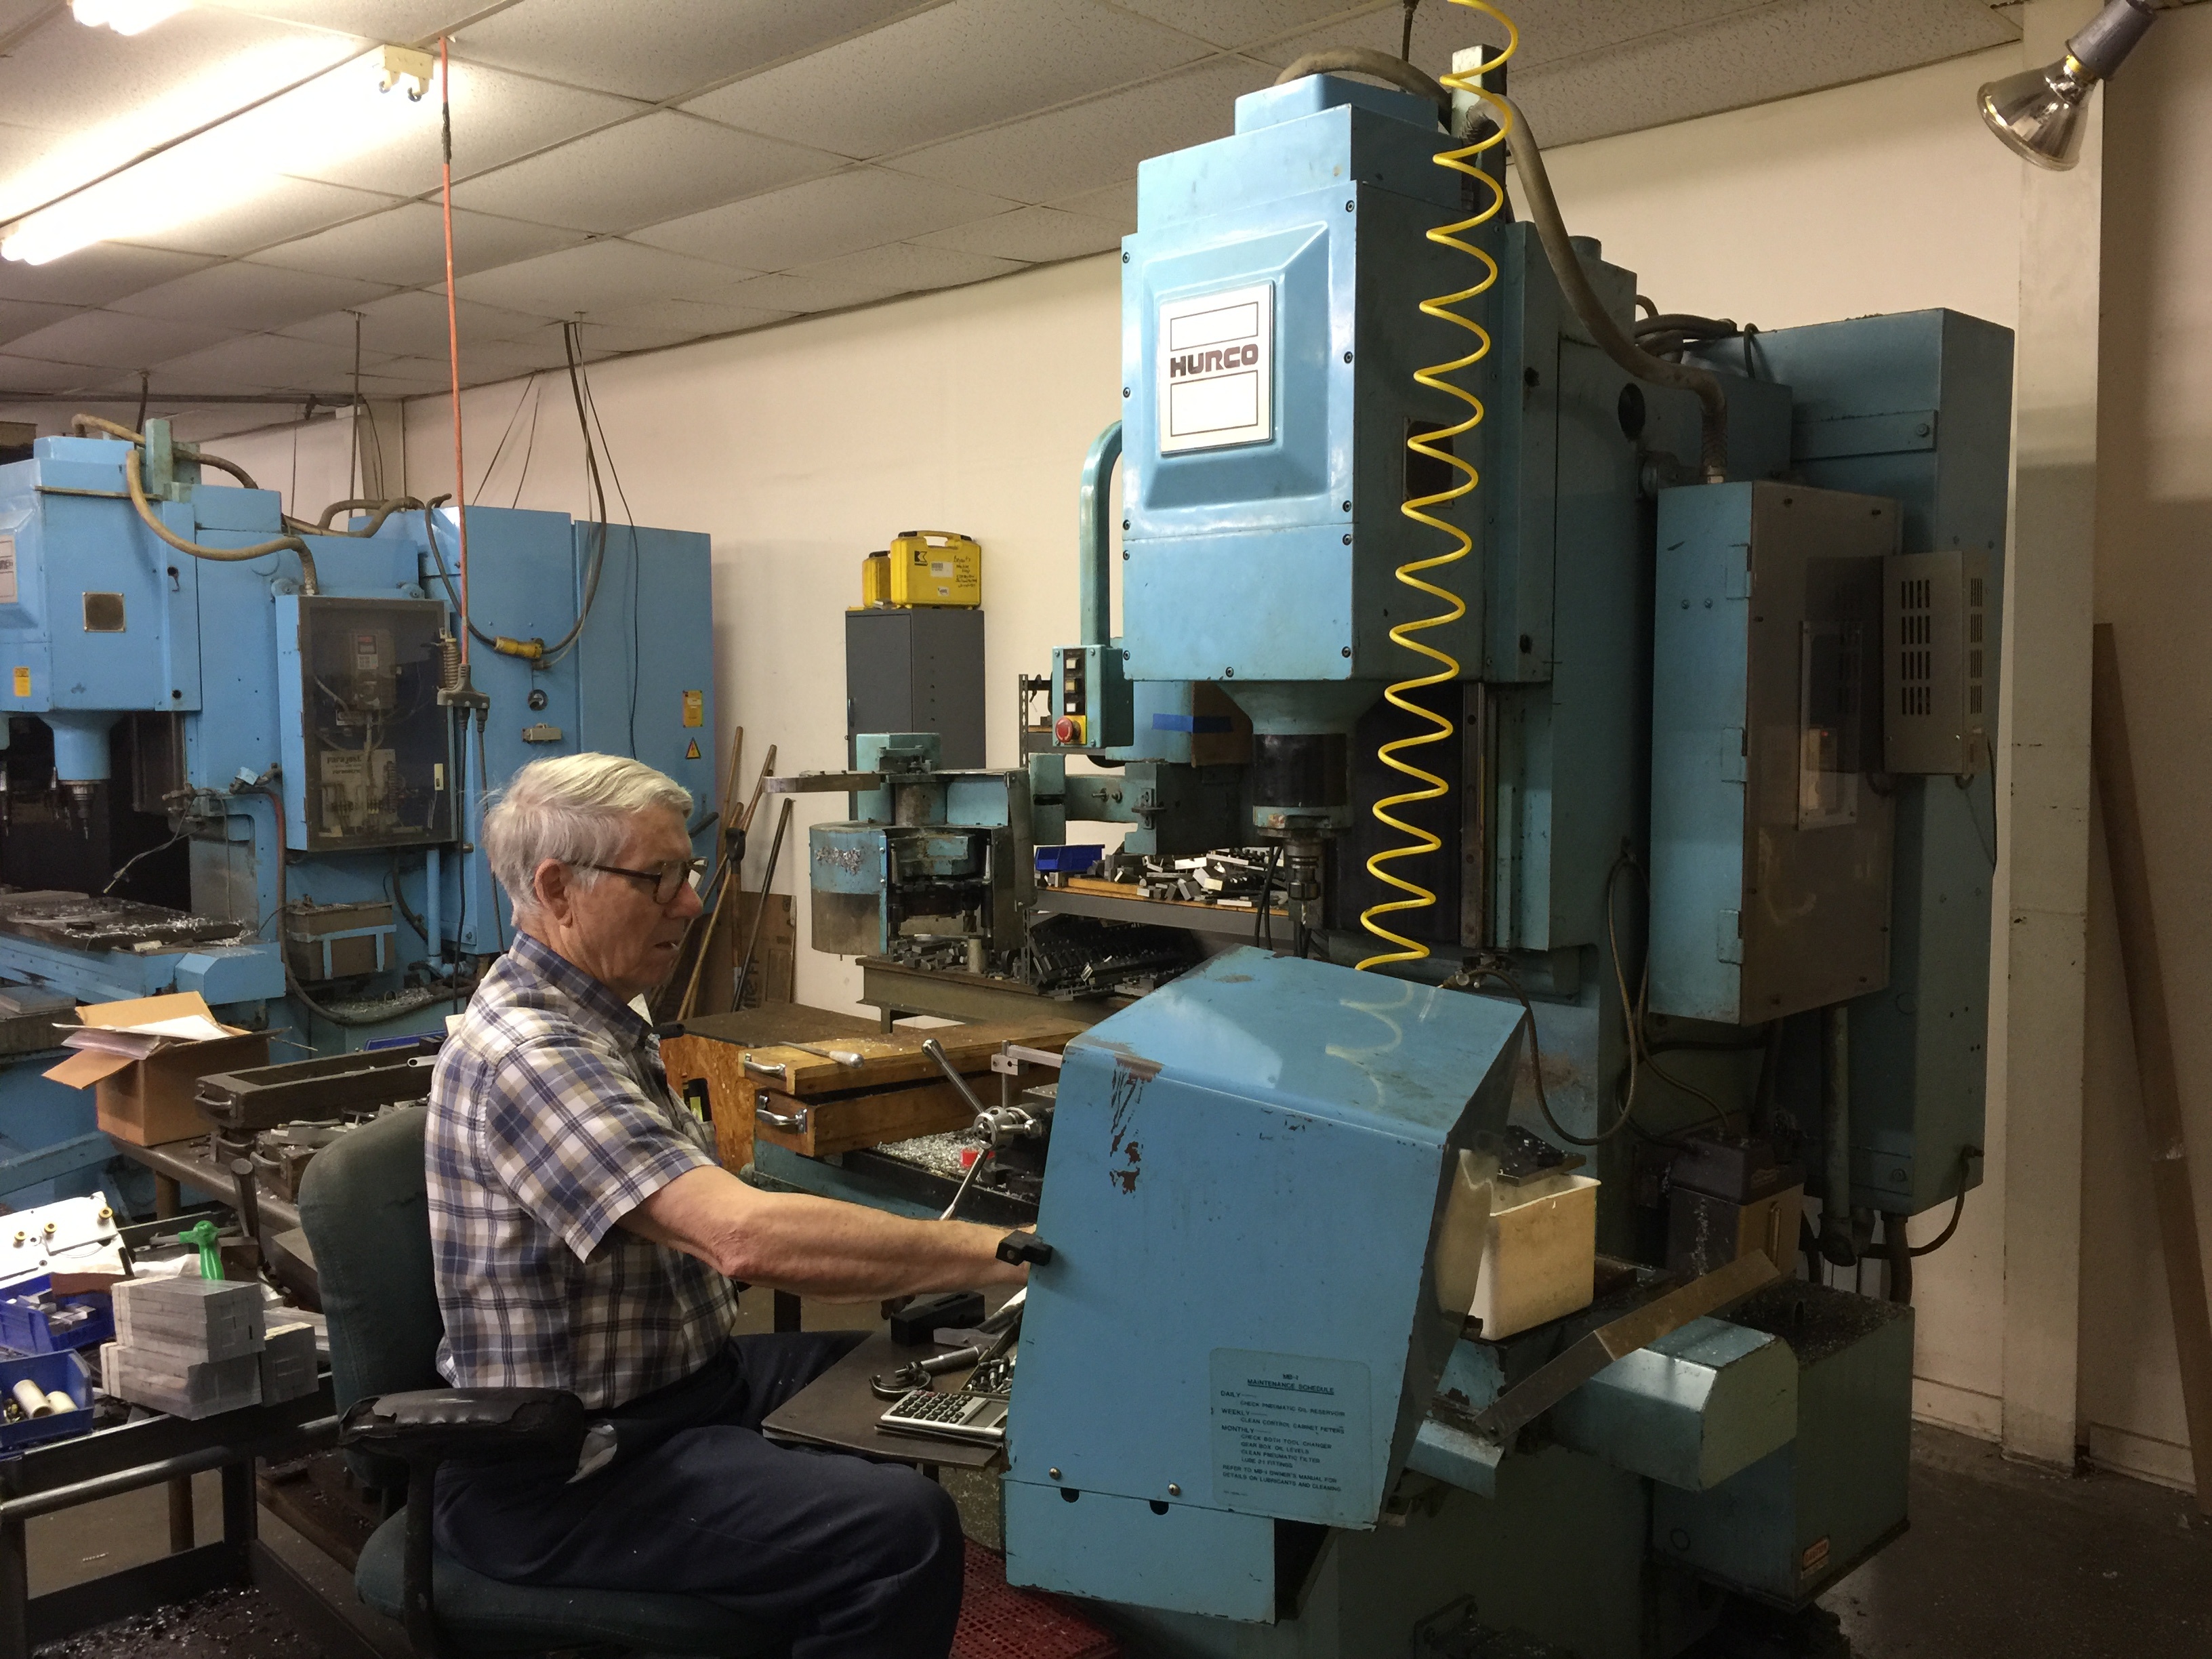 Vintage Hurcos: CNC Machines Built to Last